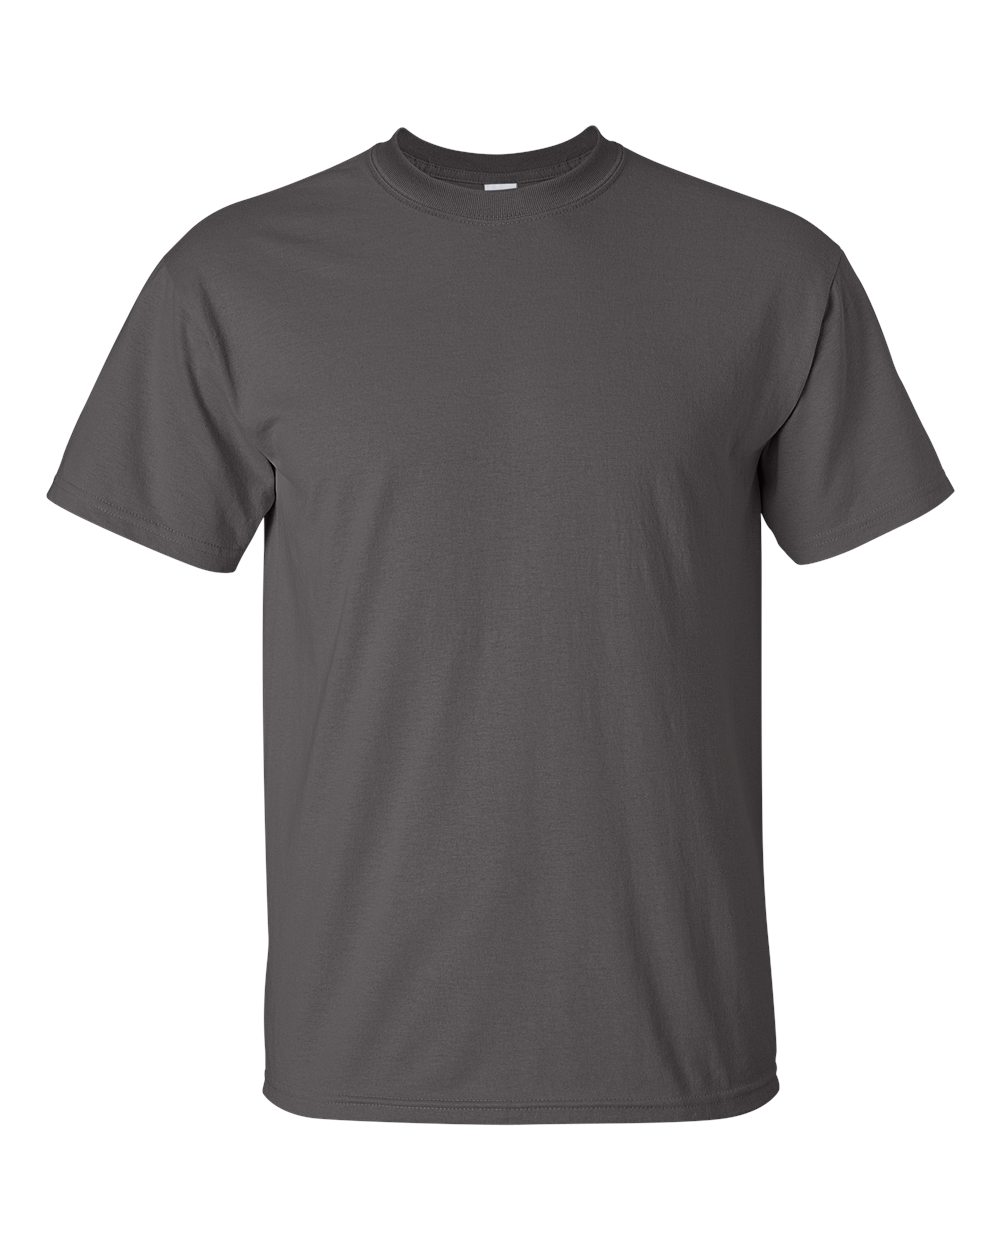 blank-dark-grey-t-shirt-basic-tees-shop